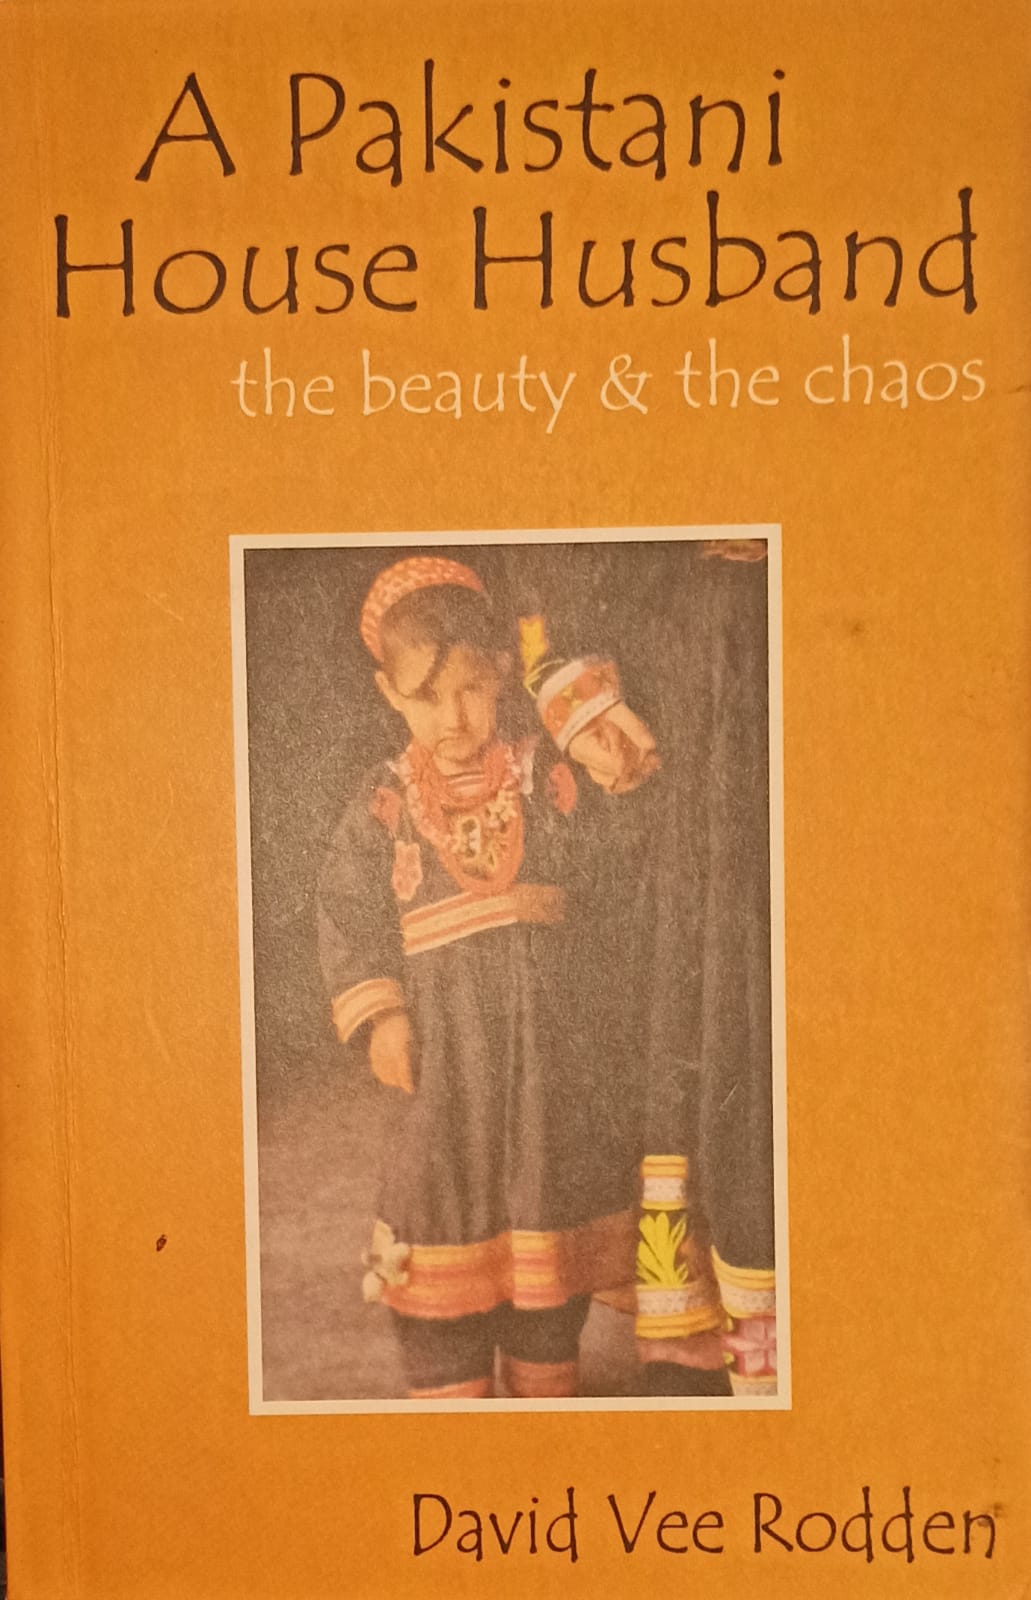 A Pakistani House Husband: the beauty & the chaos (RARE BOOKS)